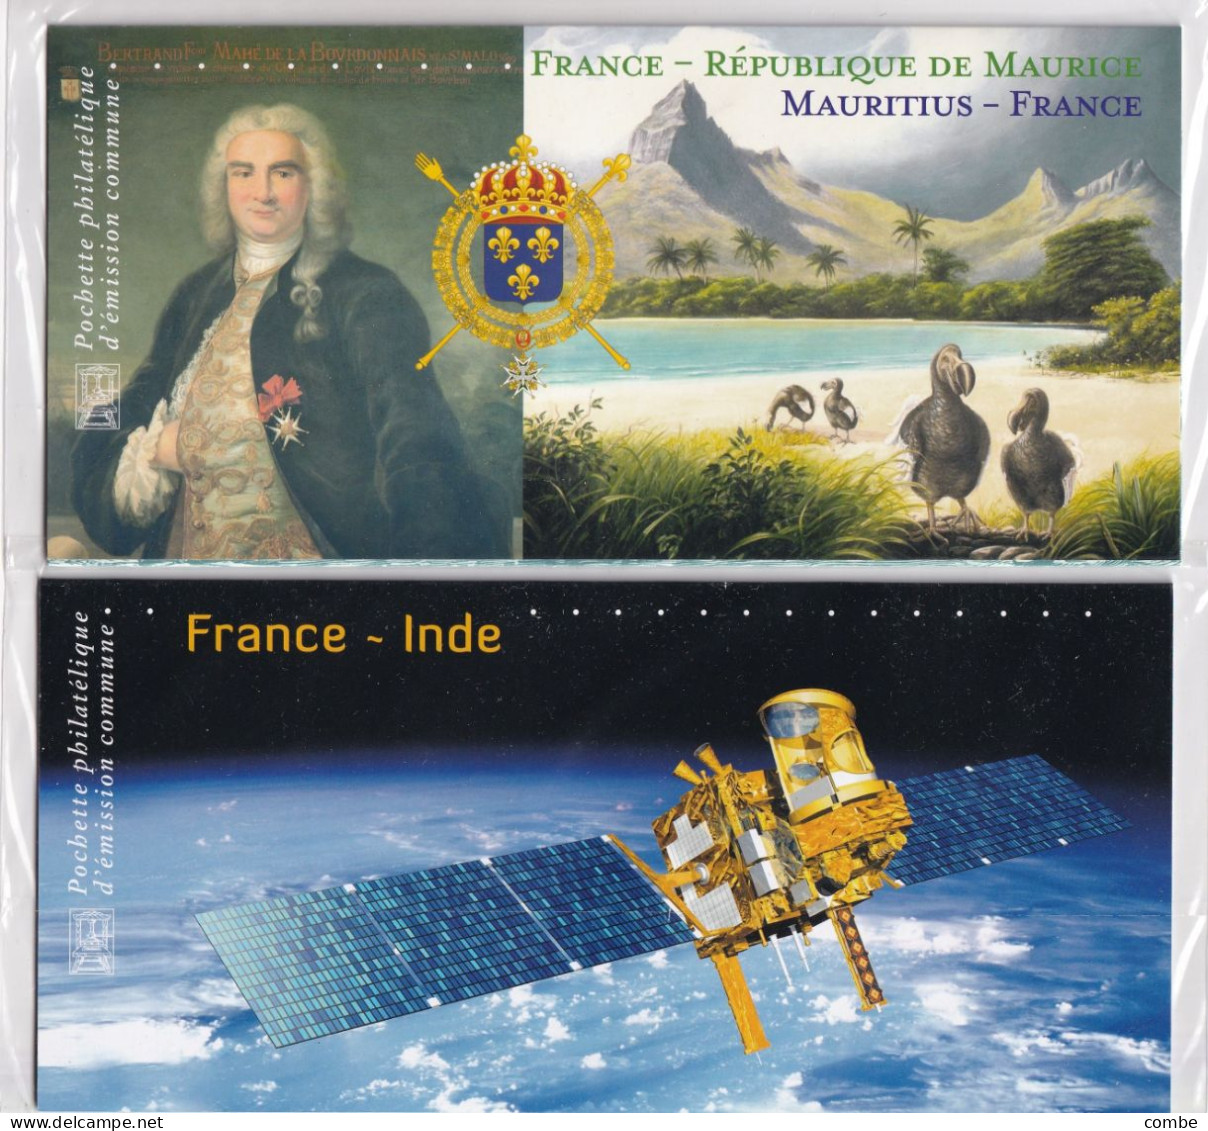 2 BLOCS SOUVENIR. NEUF SOUS BLISTER. FRANCE-INDE 2010, FRANCE-MAURICE 2015 - Souvenir Blocks & Sheetlets